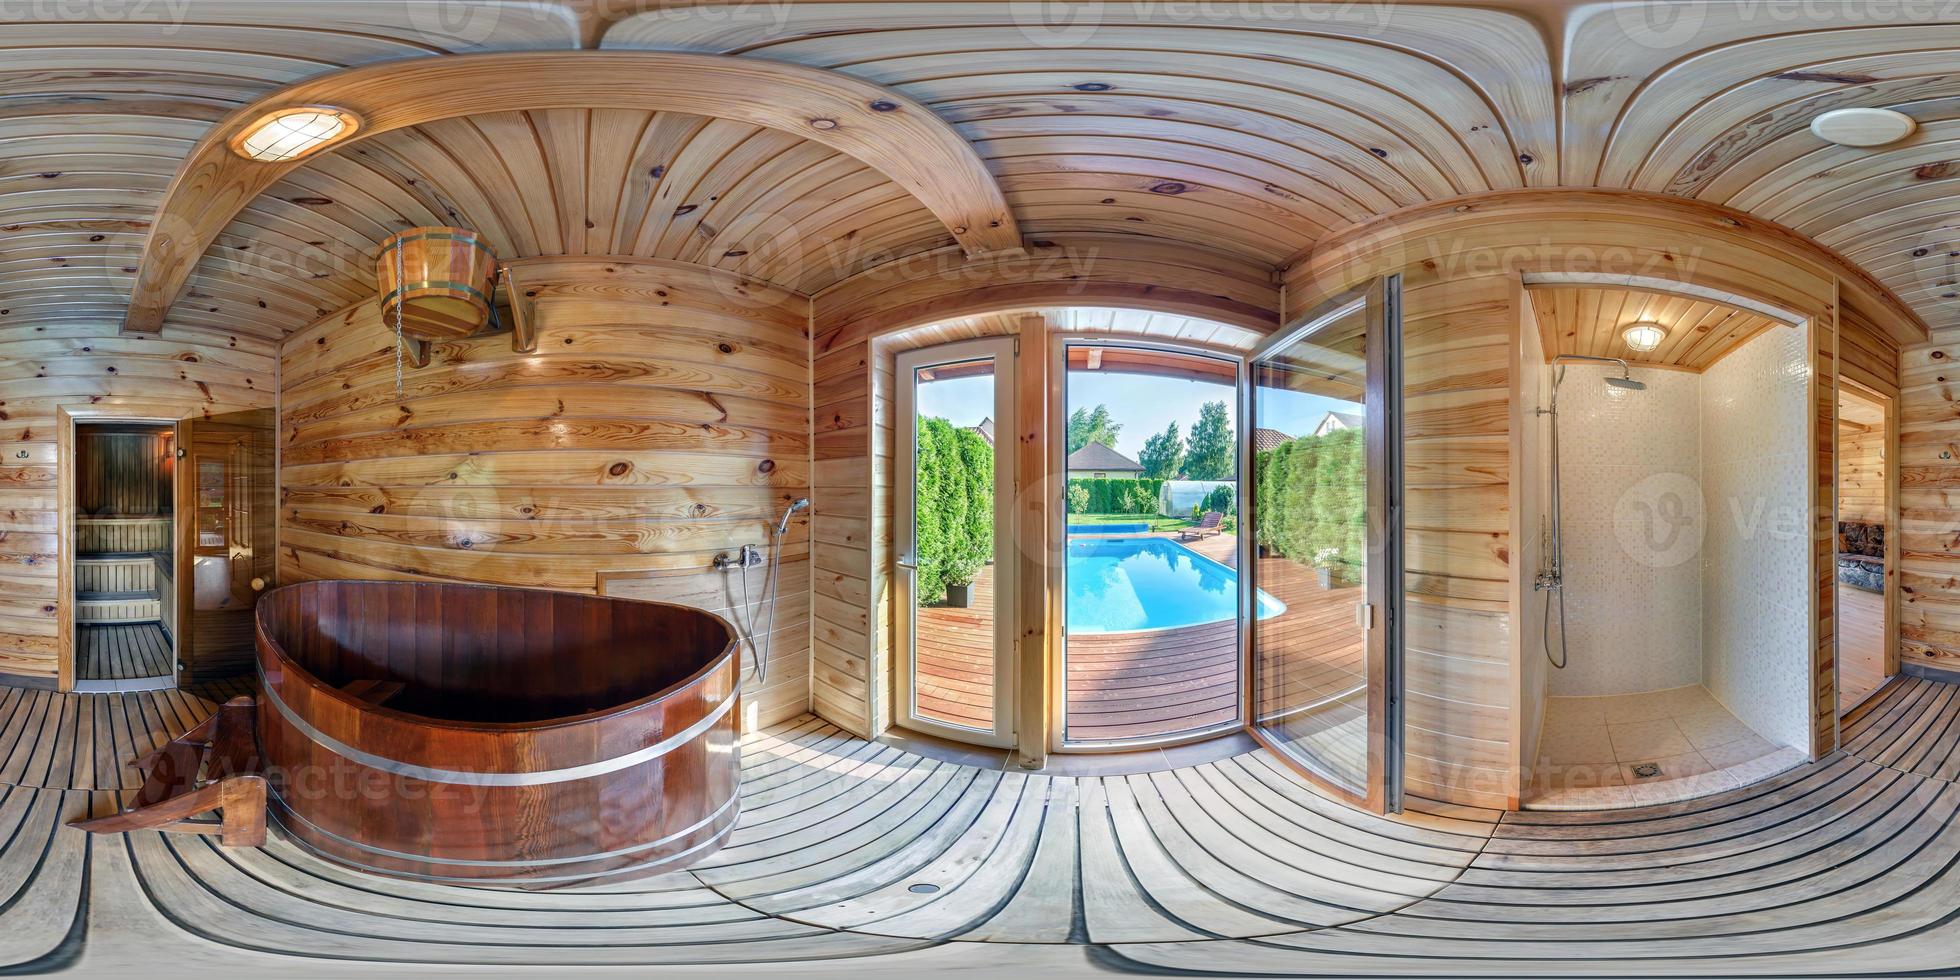 panorama hdri 360 esférico completo em projeção equiretangular perfeita no banheiro de madeira russo interior em casa de férias com espreguiçadeira perto da piscina conteúdo vr foto